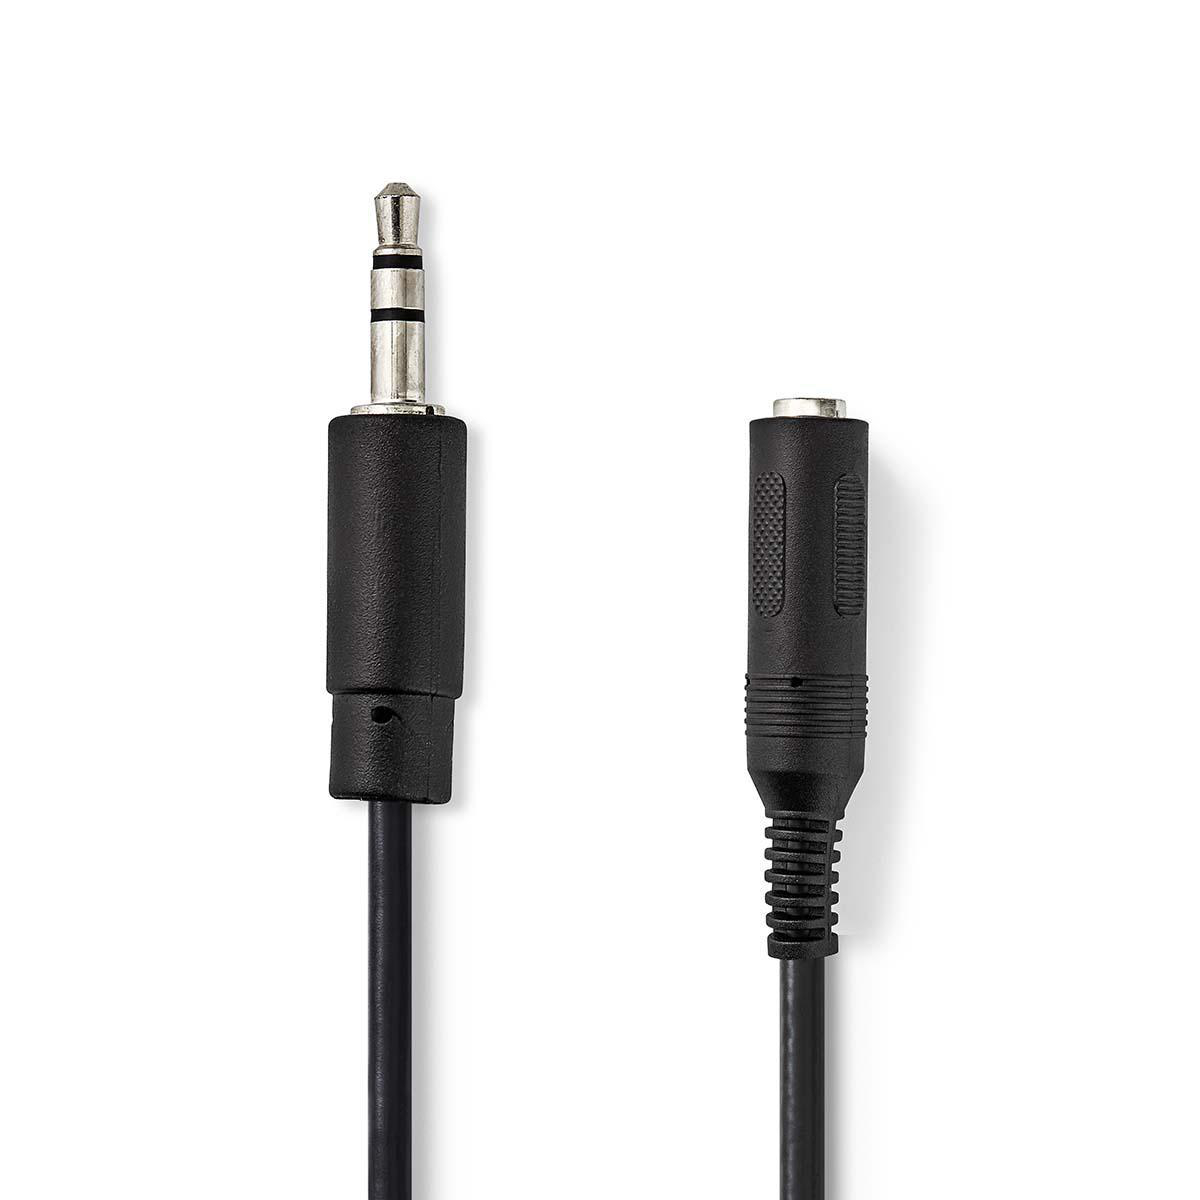 Nedis audio kabel zástrčka Jack 3.5 mm - zásuvka Jack 6.35 mm, 0.2 m, černá (CAGP22550BK02)